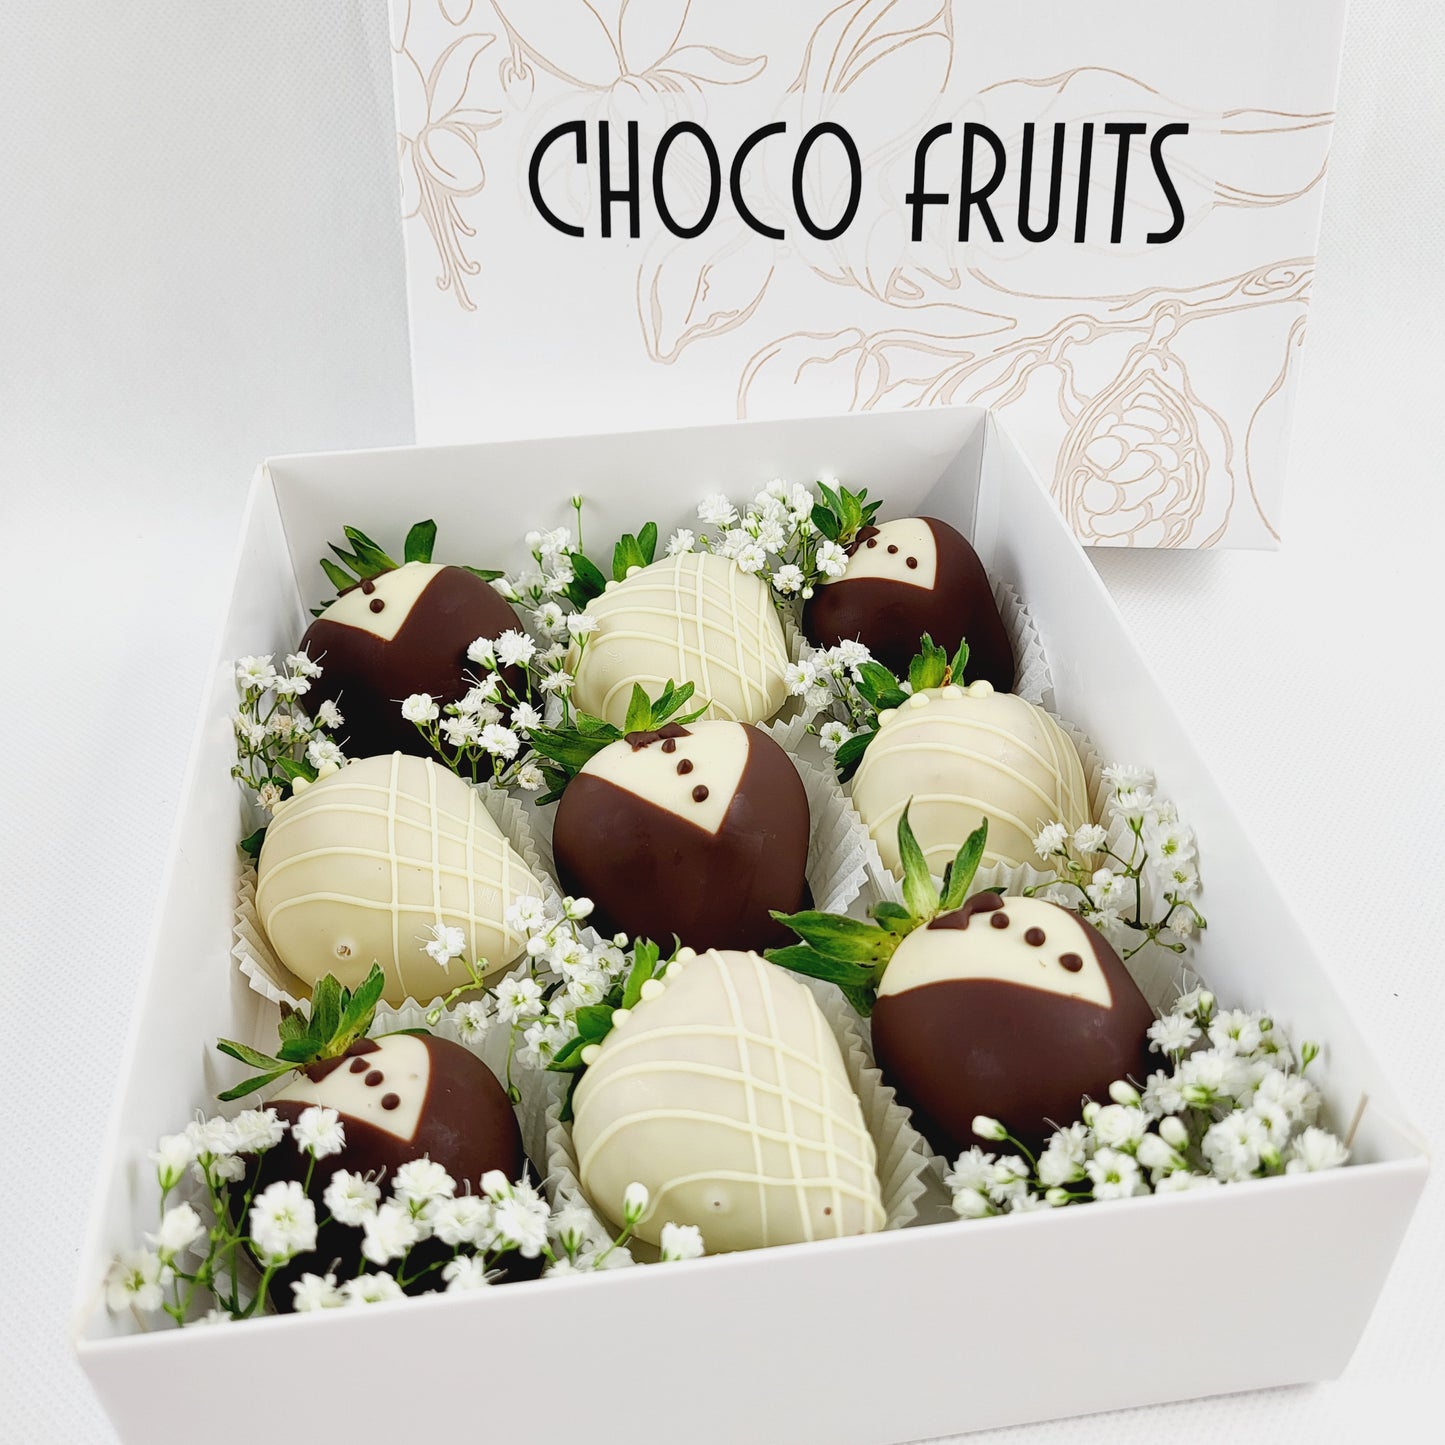 Choco Fruits Schokoerdbeeren und Schokofrüchte als Braut und Bräutigam verziert und mit Schleierkraut dekoriert